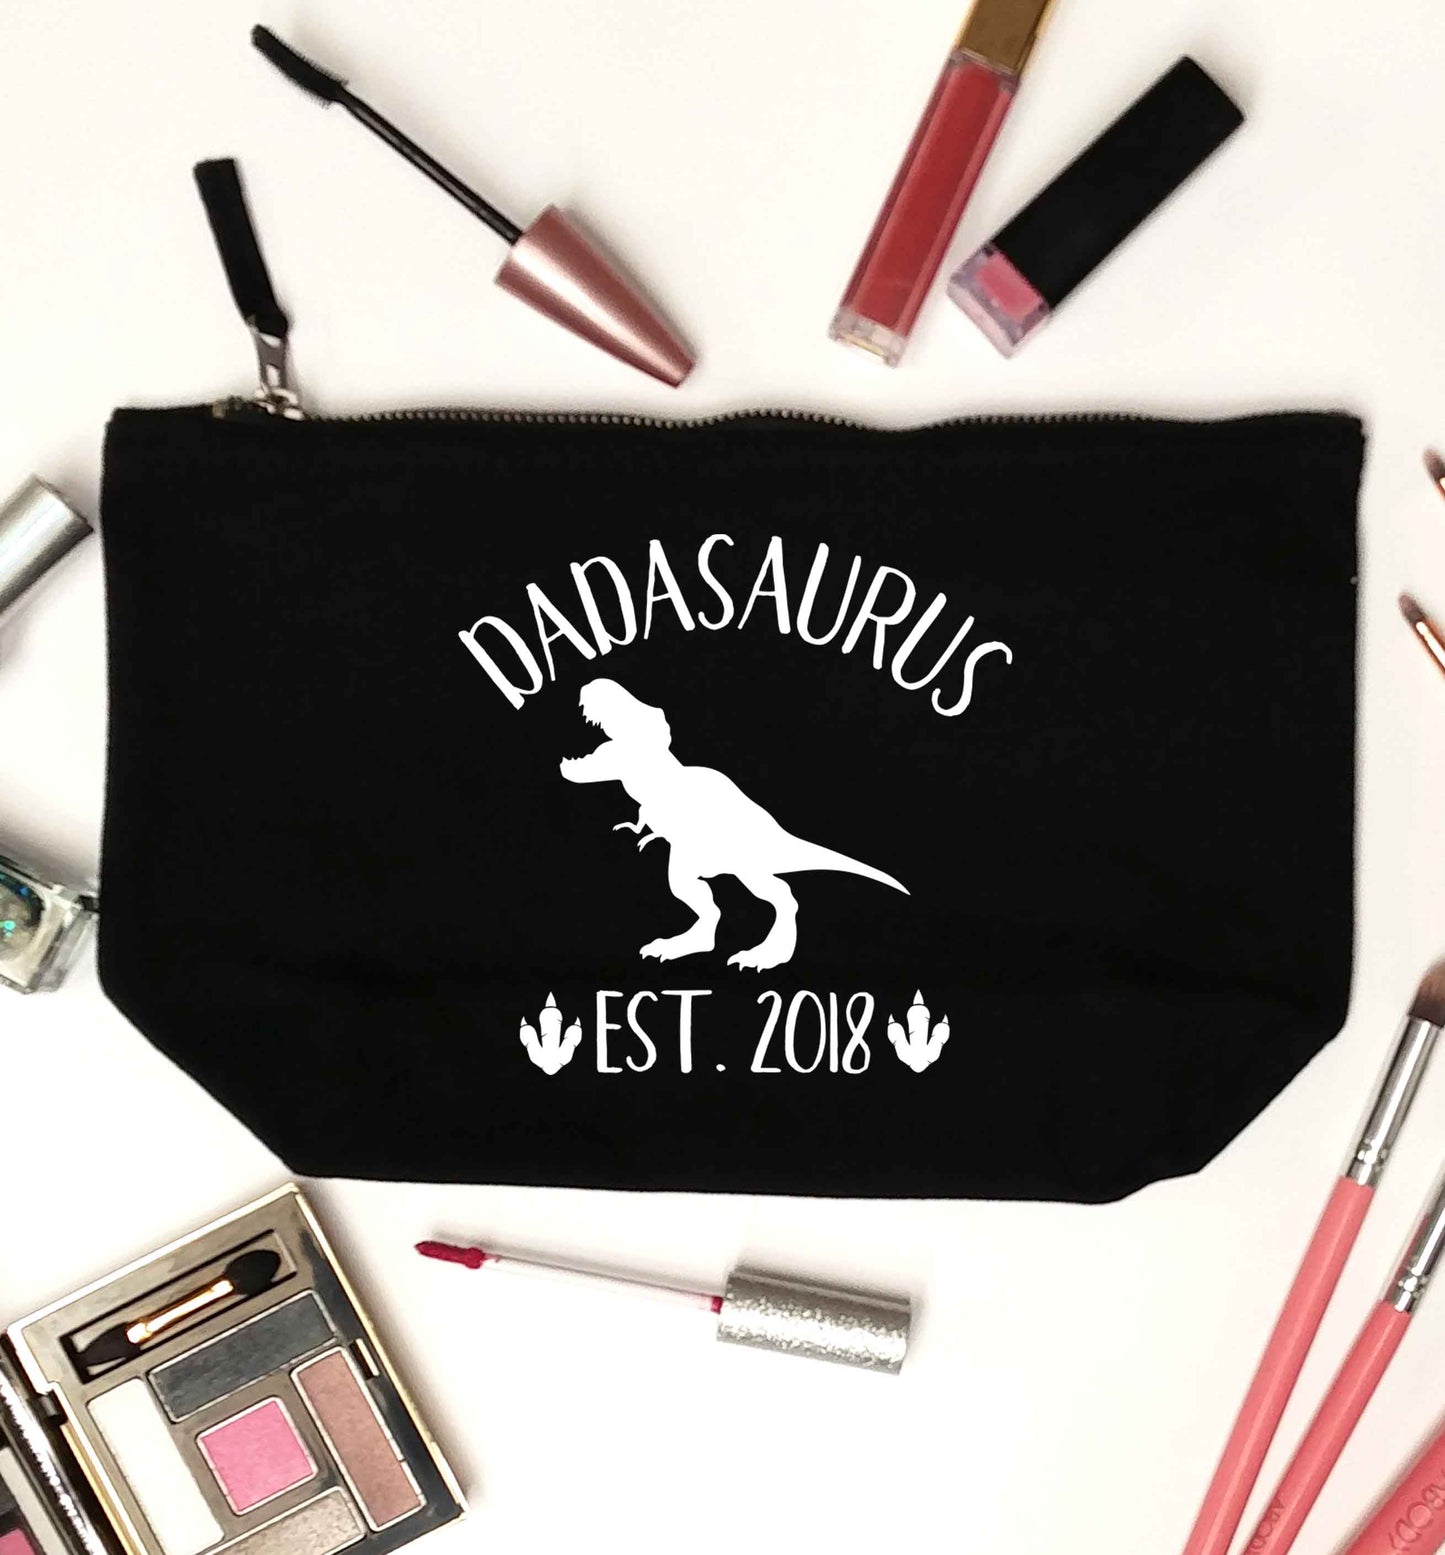 Personalised dadasaurus since (custom date) black makeup bag